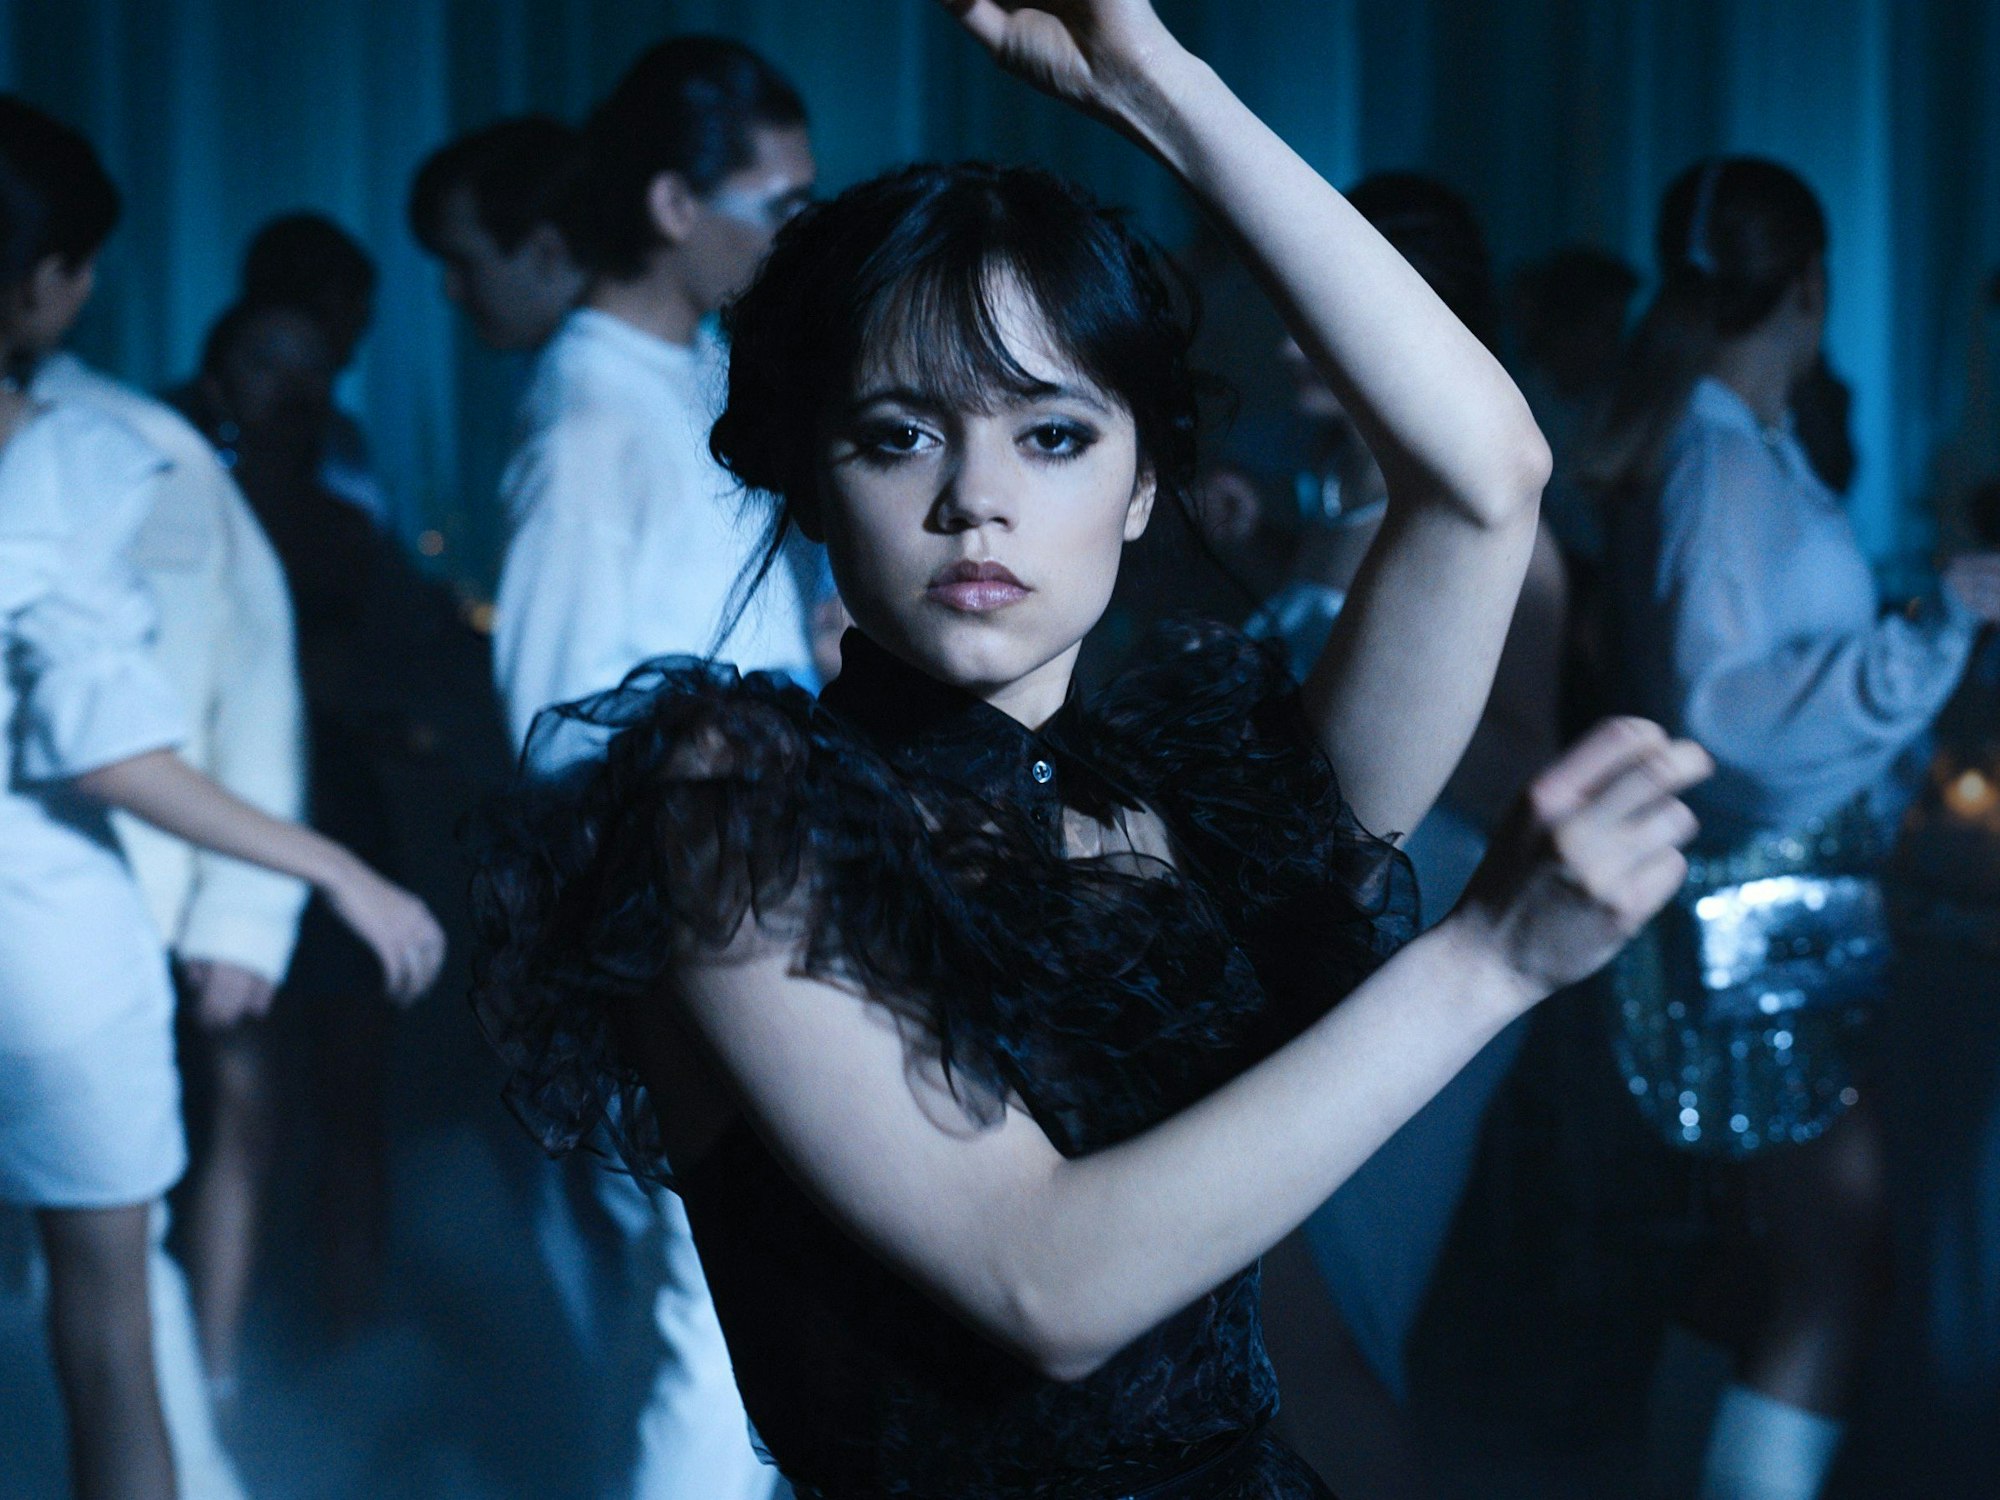 Wednesday Addams in einer Tanzszene in der Netflix-Serie „Wednesday“.